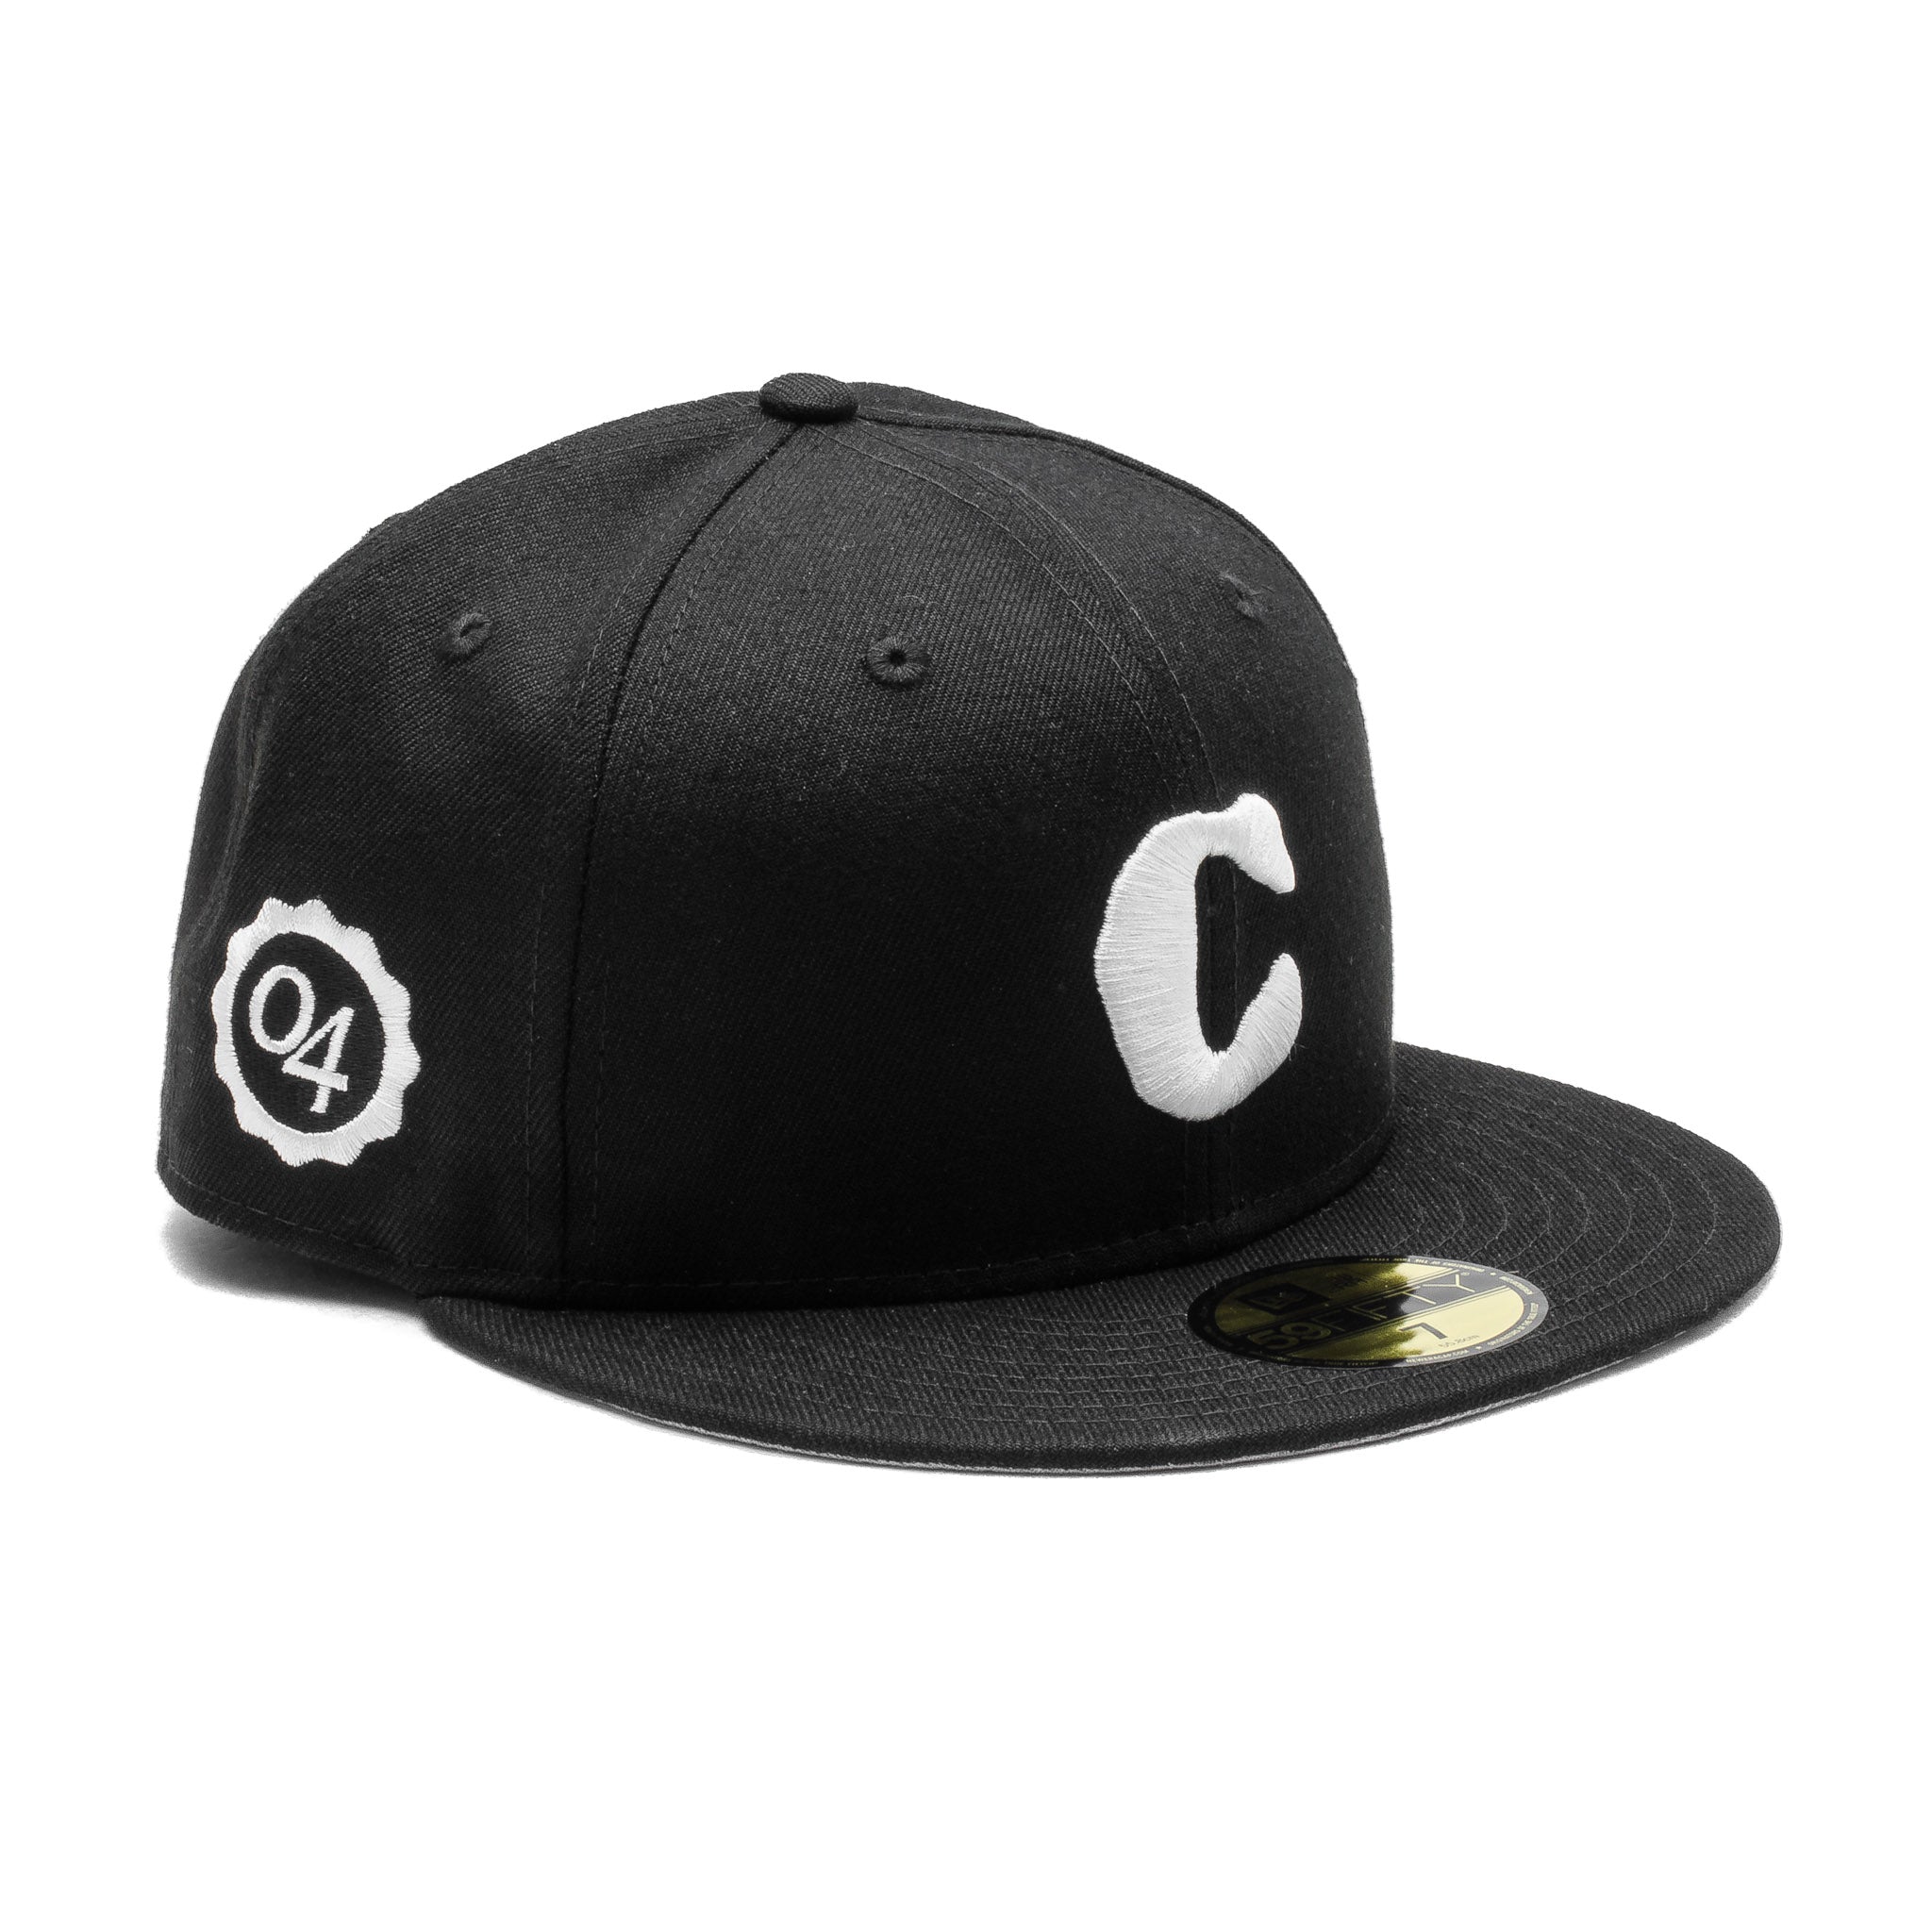 Capsule Casper Logo x New Era Fitted Cap Black